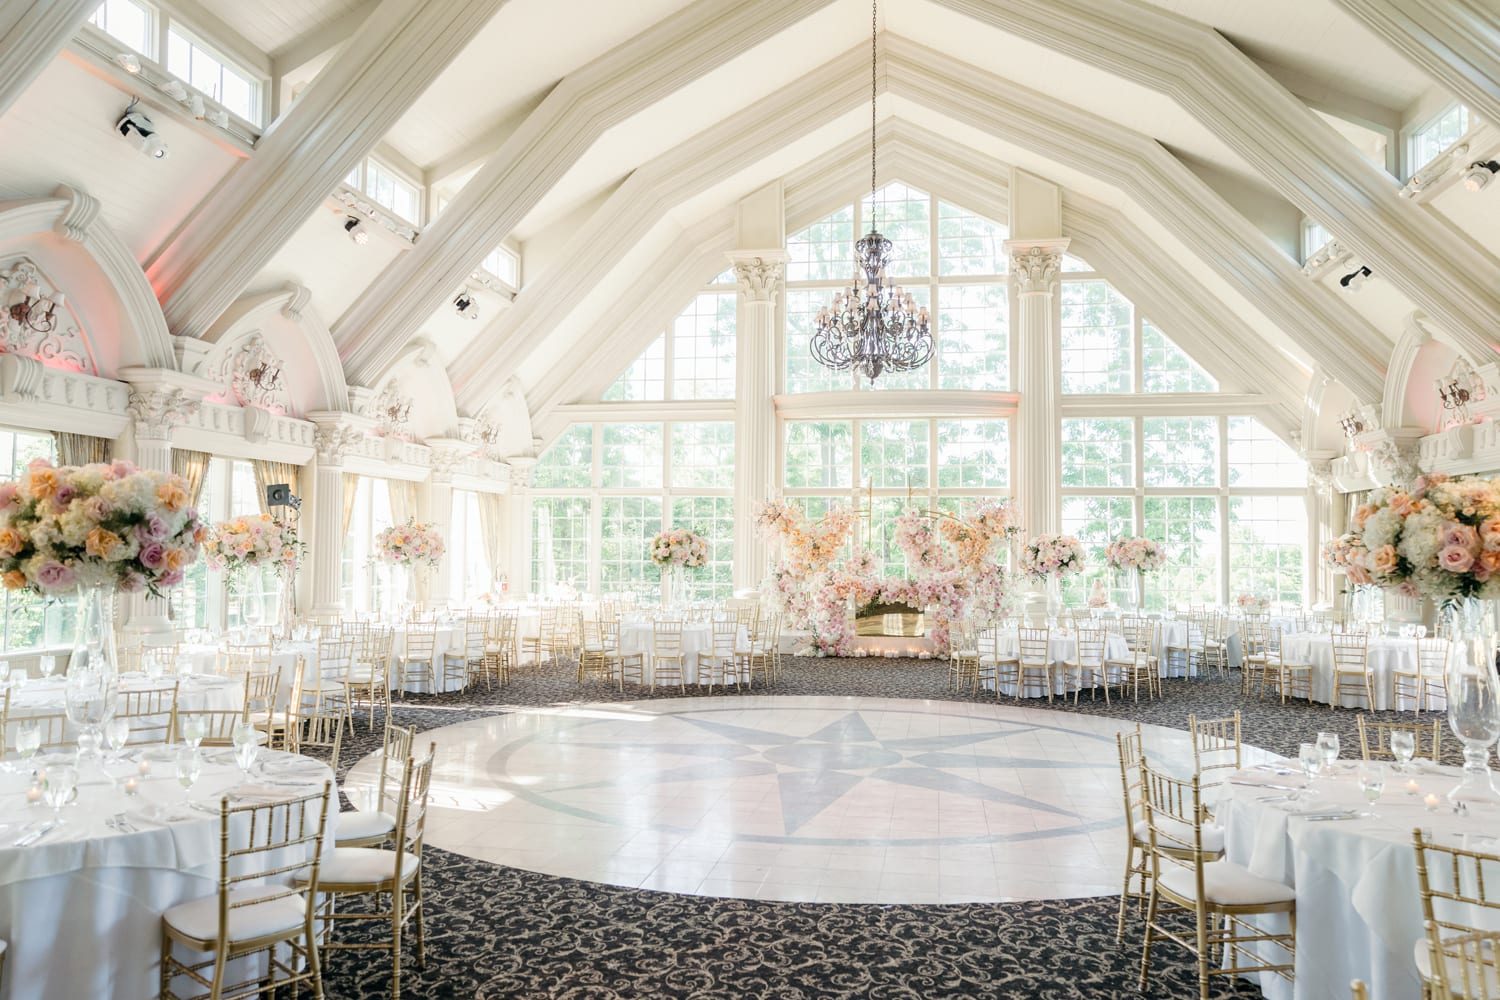 The Ashford Estate wedding reception setting